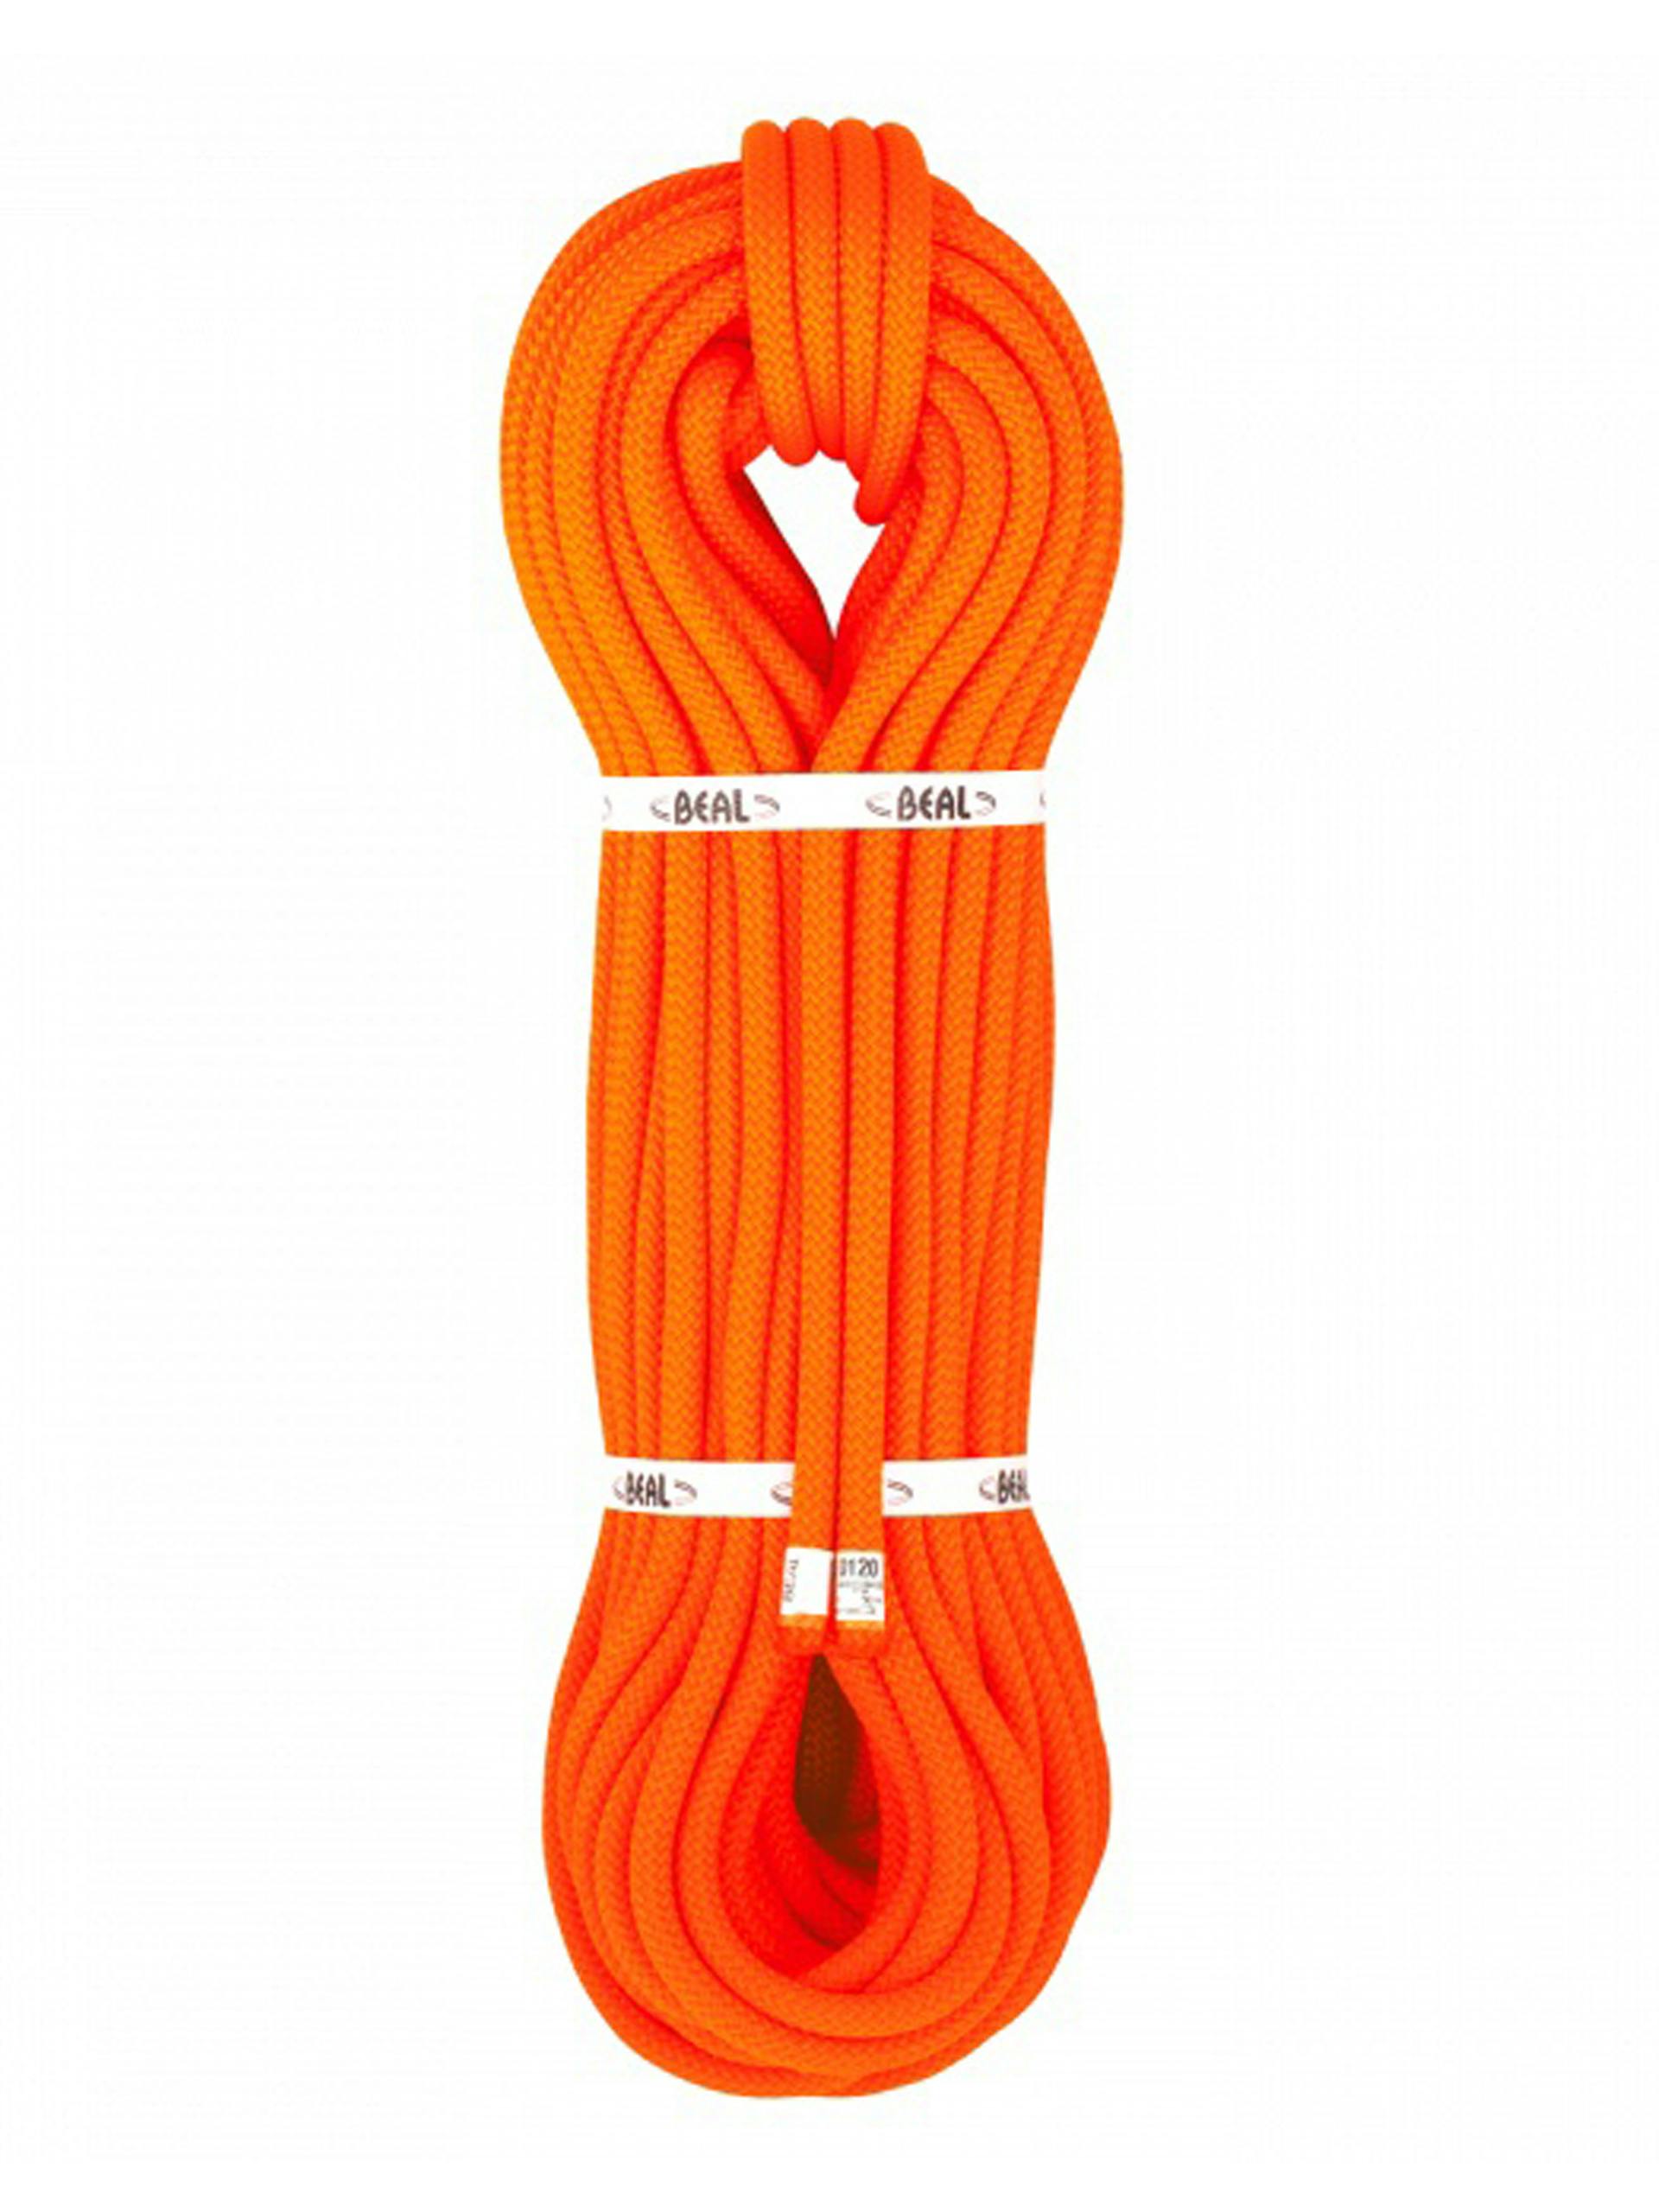 Beal 10.5mm Rescue Rope - Orange, 100m